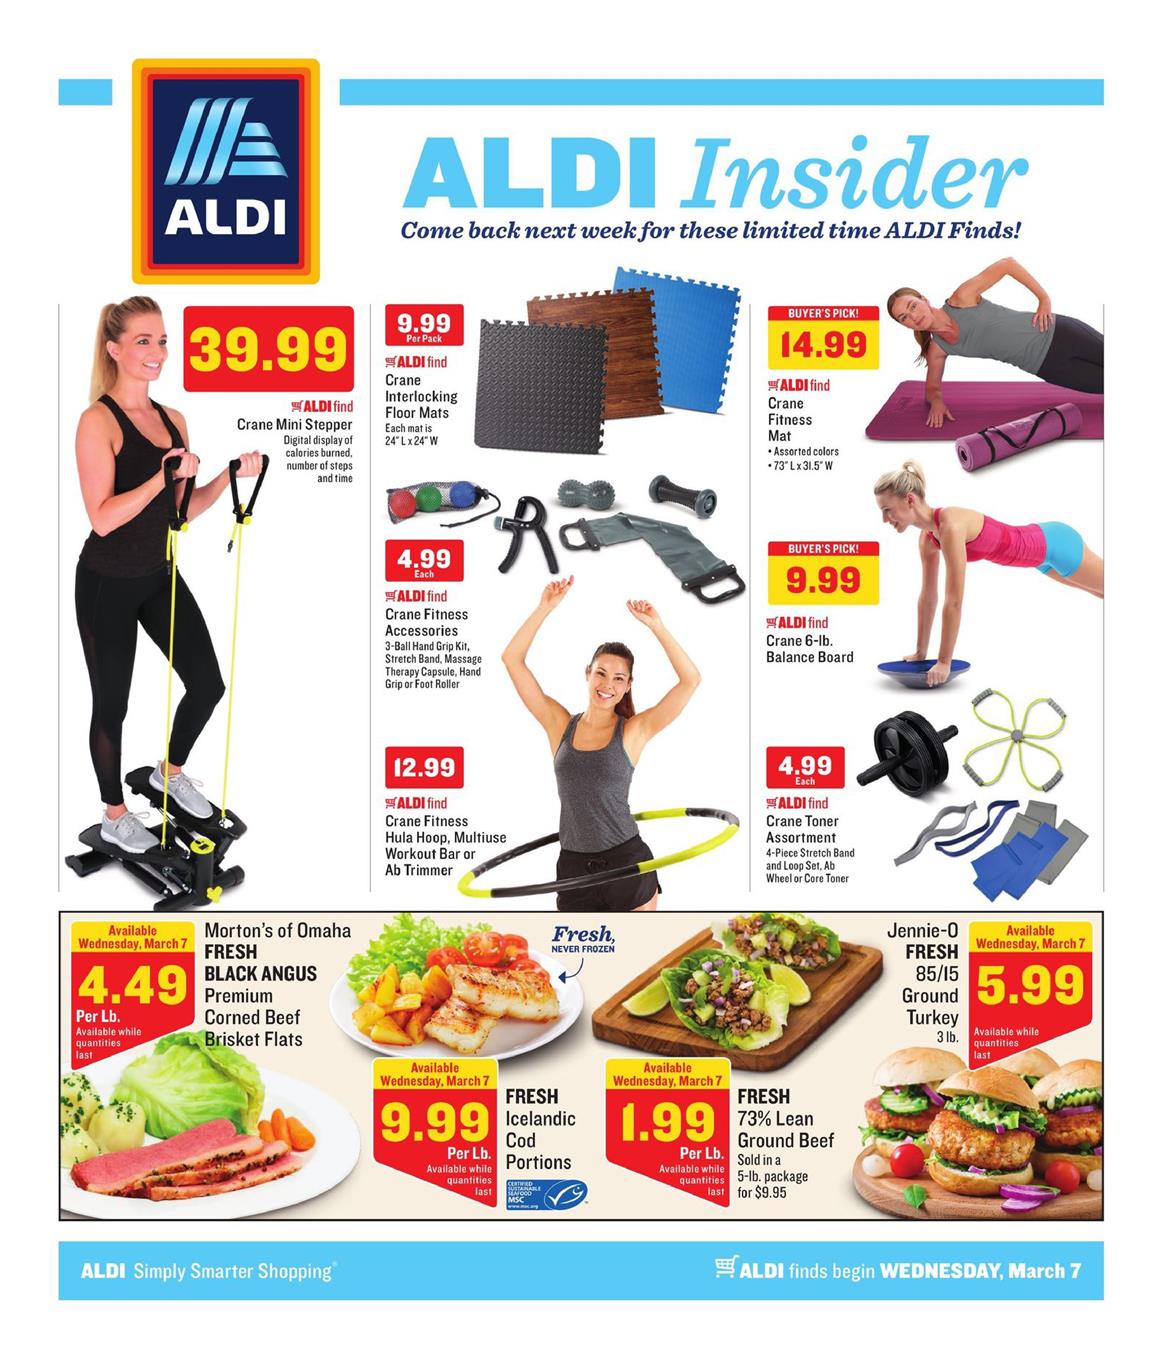 ALDI Weekly Ad March 7 13, 2018 WeeklyAds2